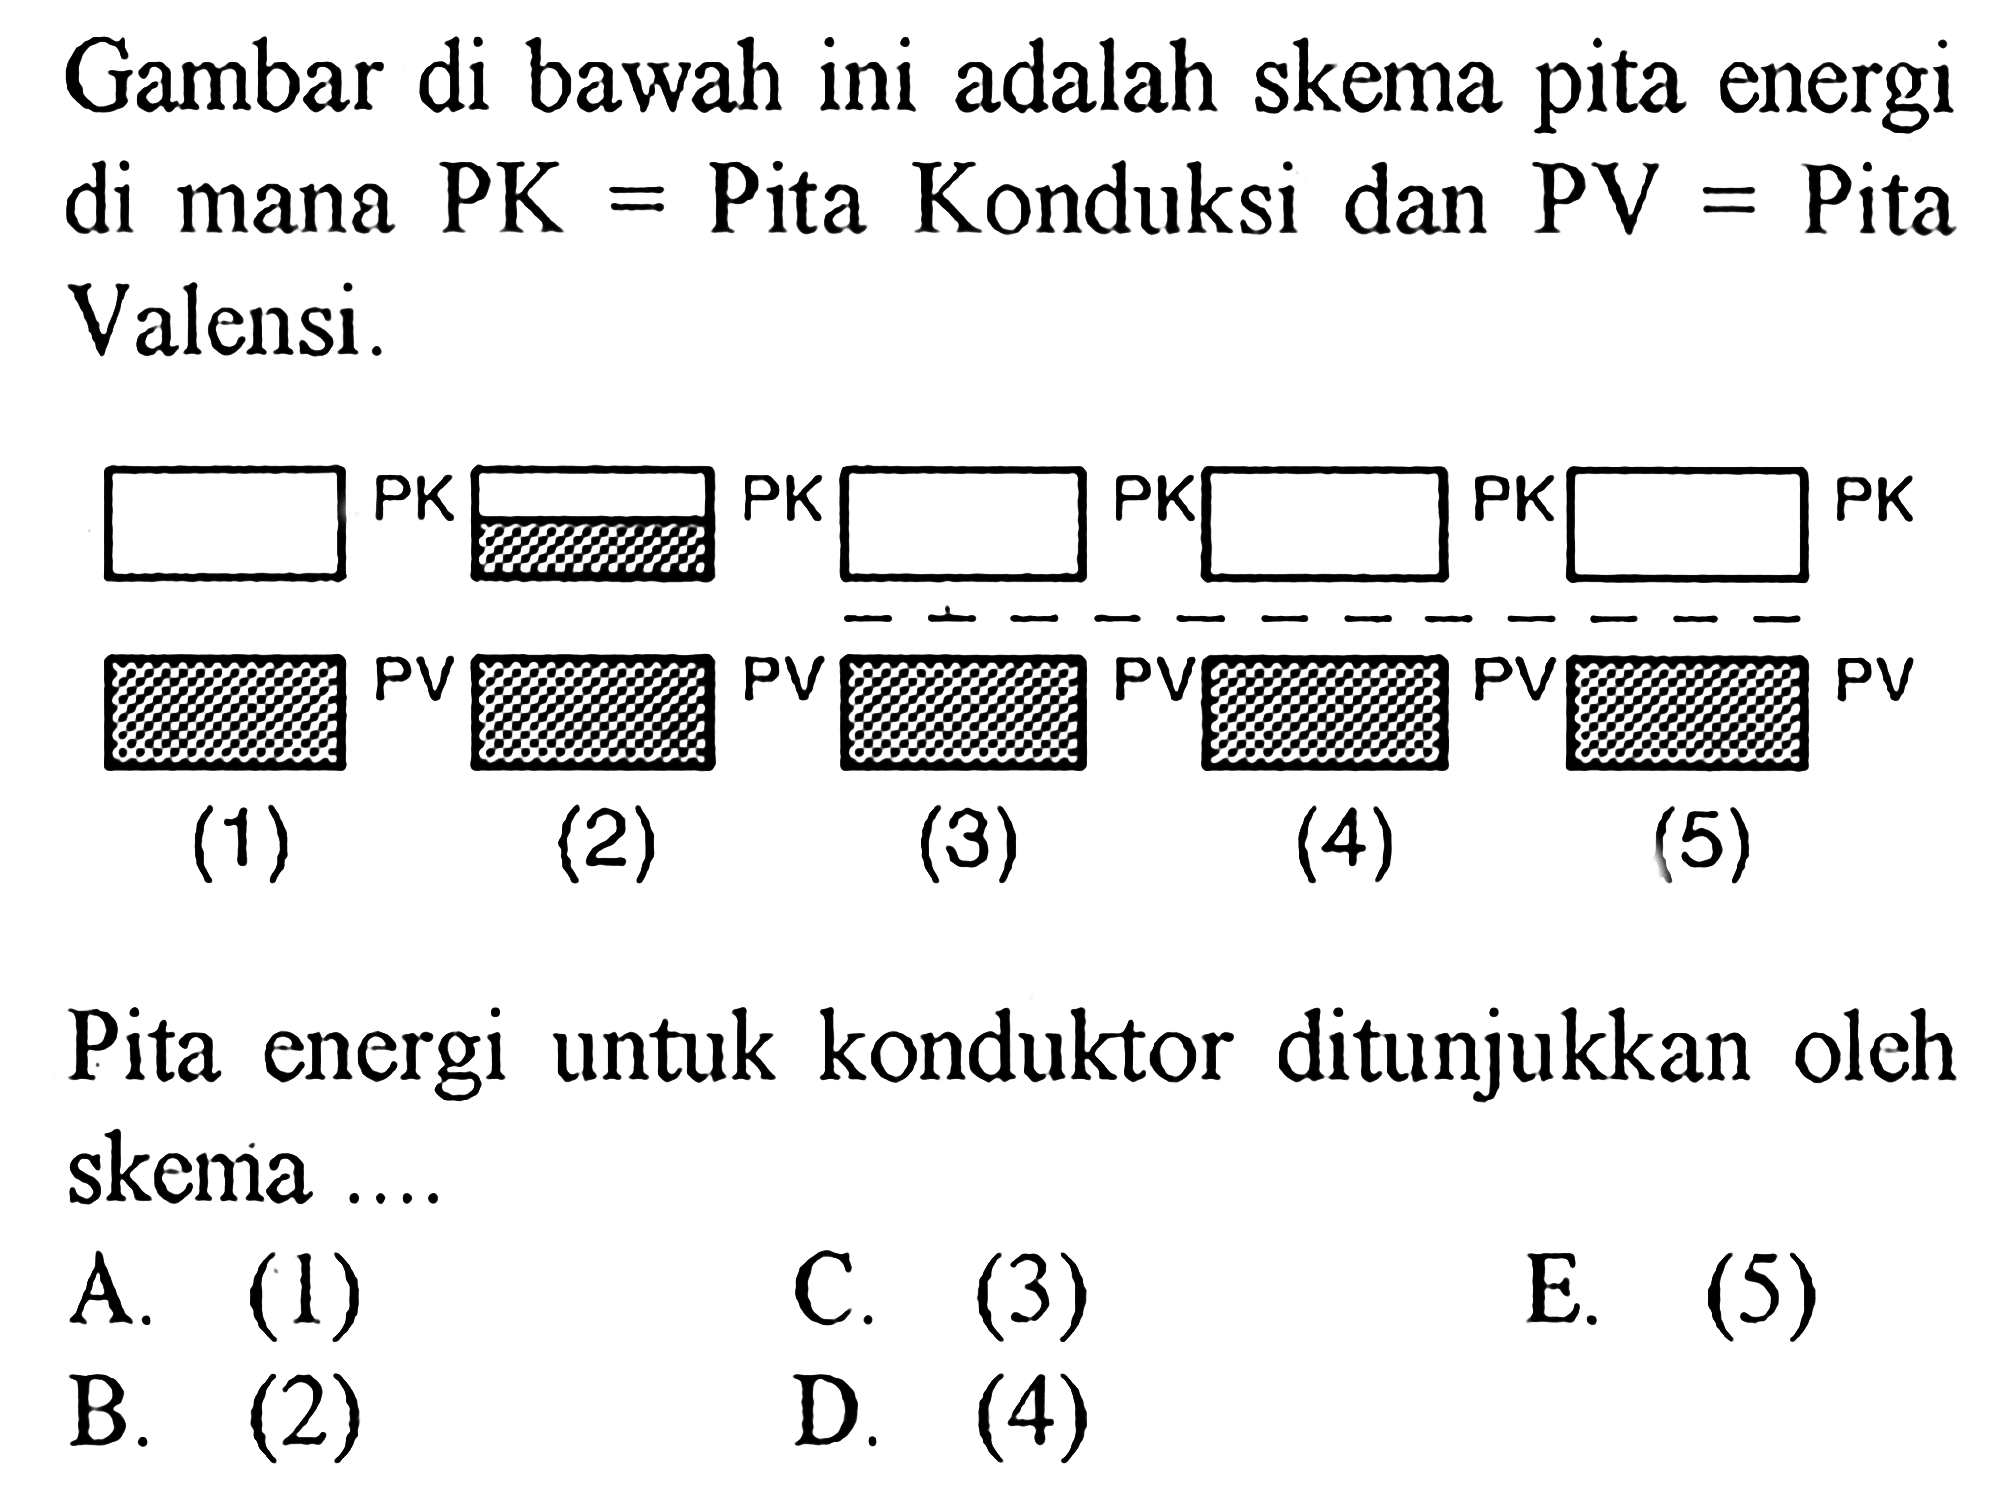 Gambar di bawah ini adalah skema pita energi di mana PK= Pita Konduksi dan PV= Pita Valensi. PK PV (1) PK PV (2) PK PV (3) PK PV (4) PK PV (5) Pita energi untuk konduktor ditunjukkan oleh skema ....